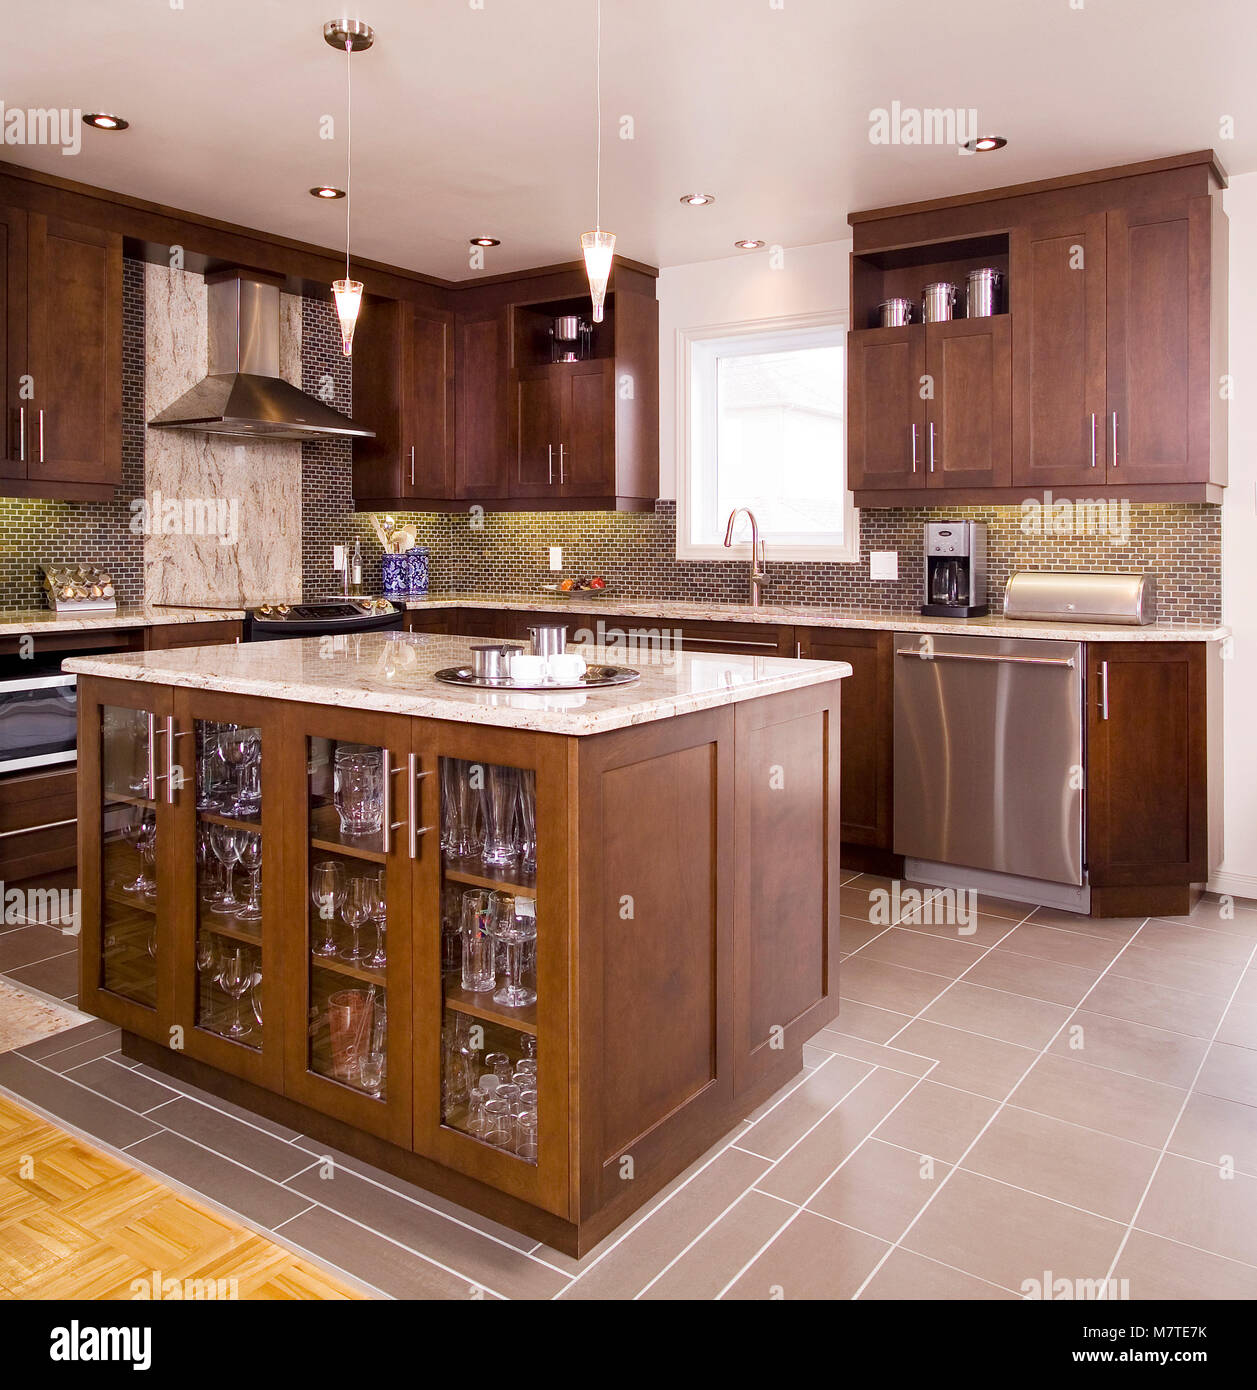 Braun Holz- Küche mit Insel mit einem Granit Zähler nach oben  Stockfotografie - Alamy